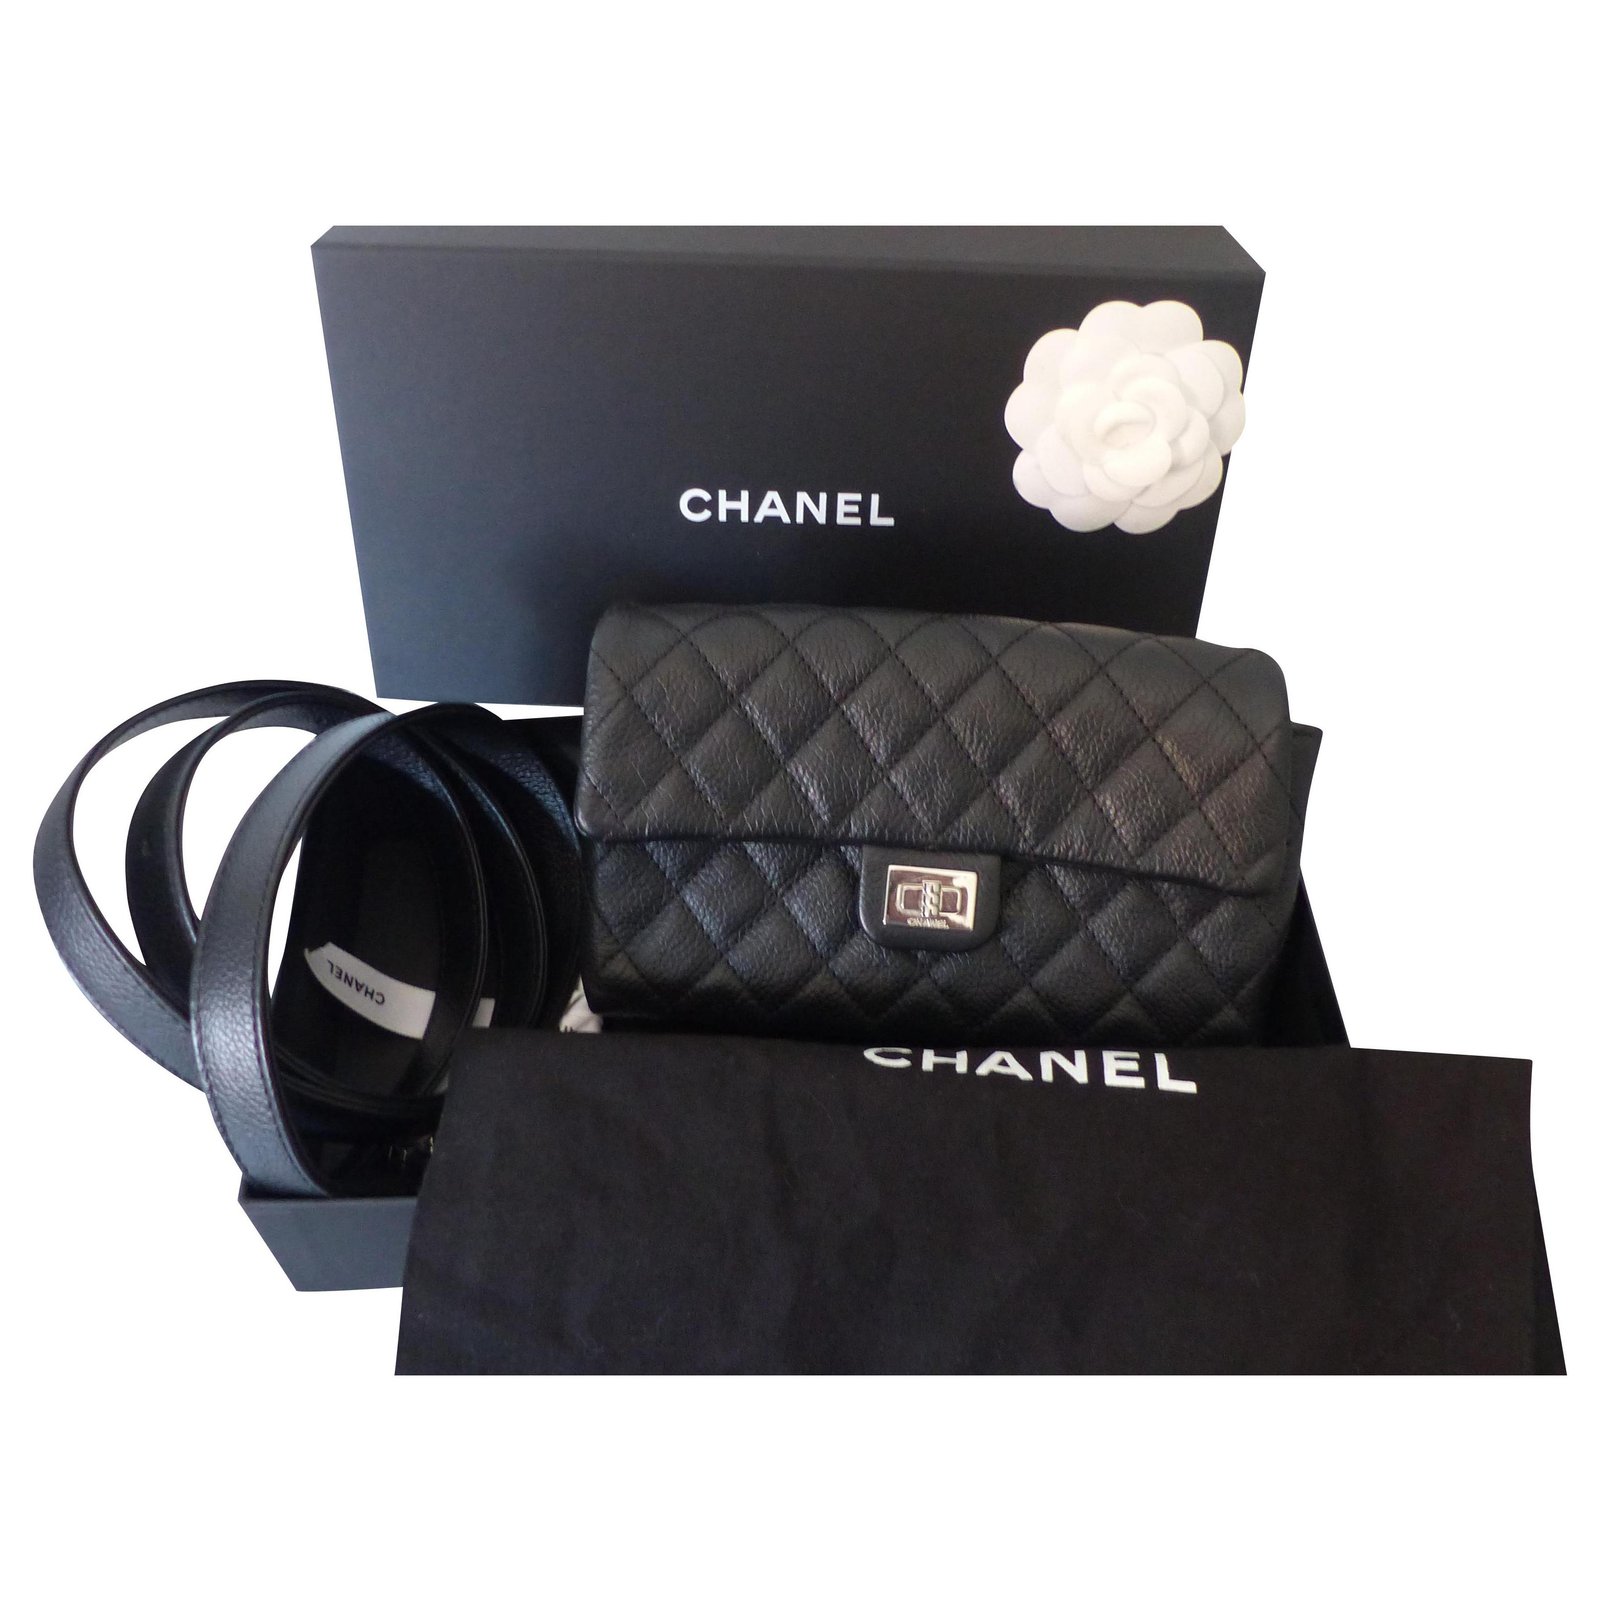 Chanel Reissue Clutch